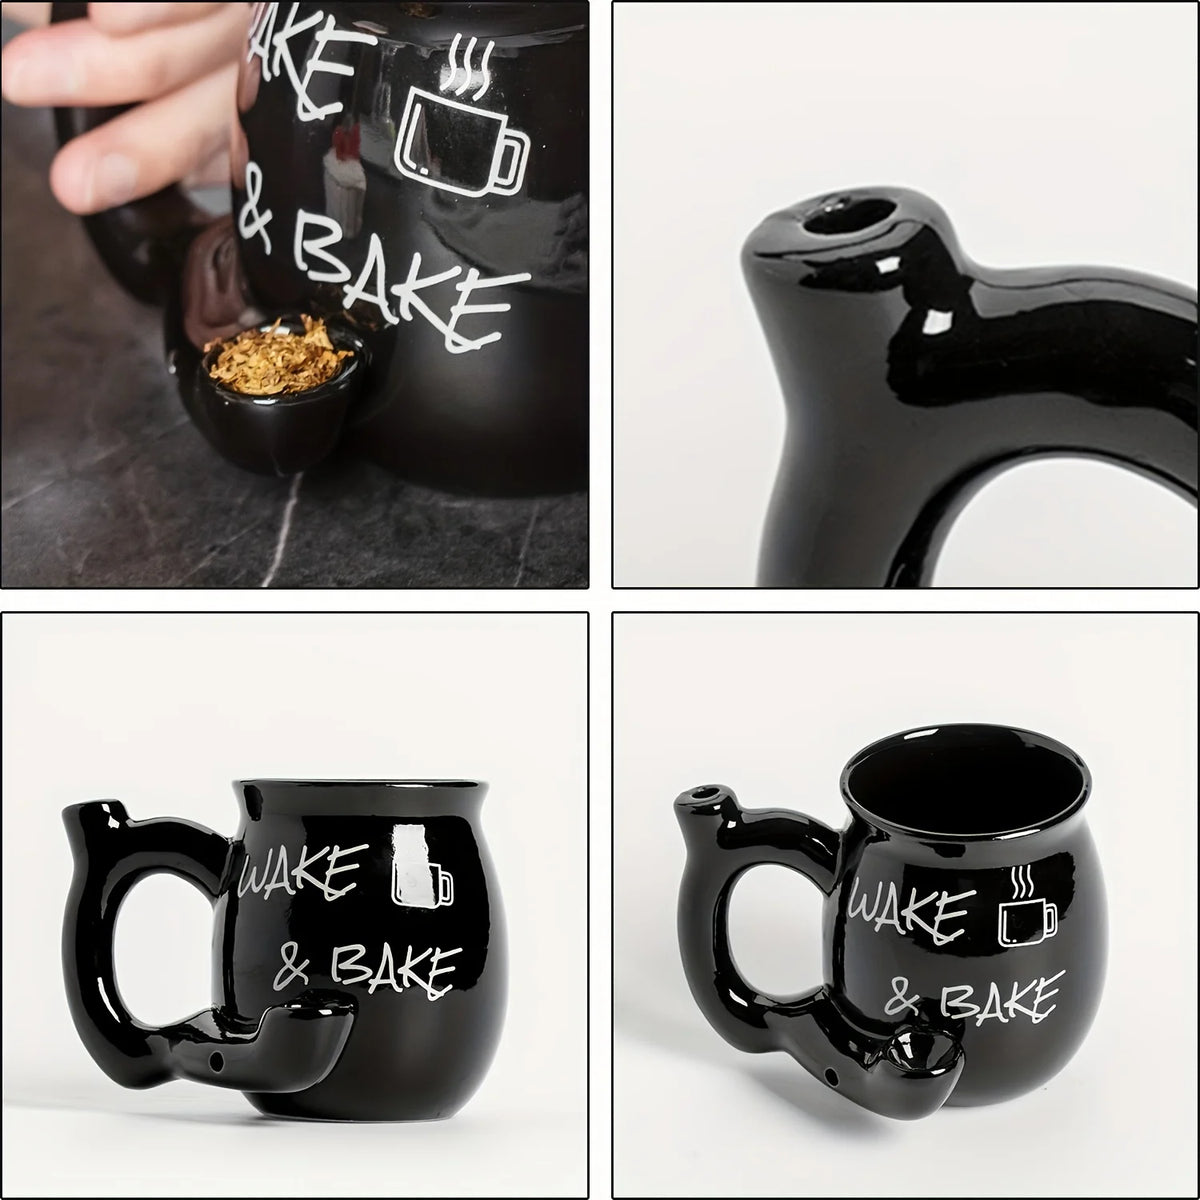 Wake and Bake Coffee Mug